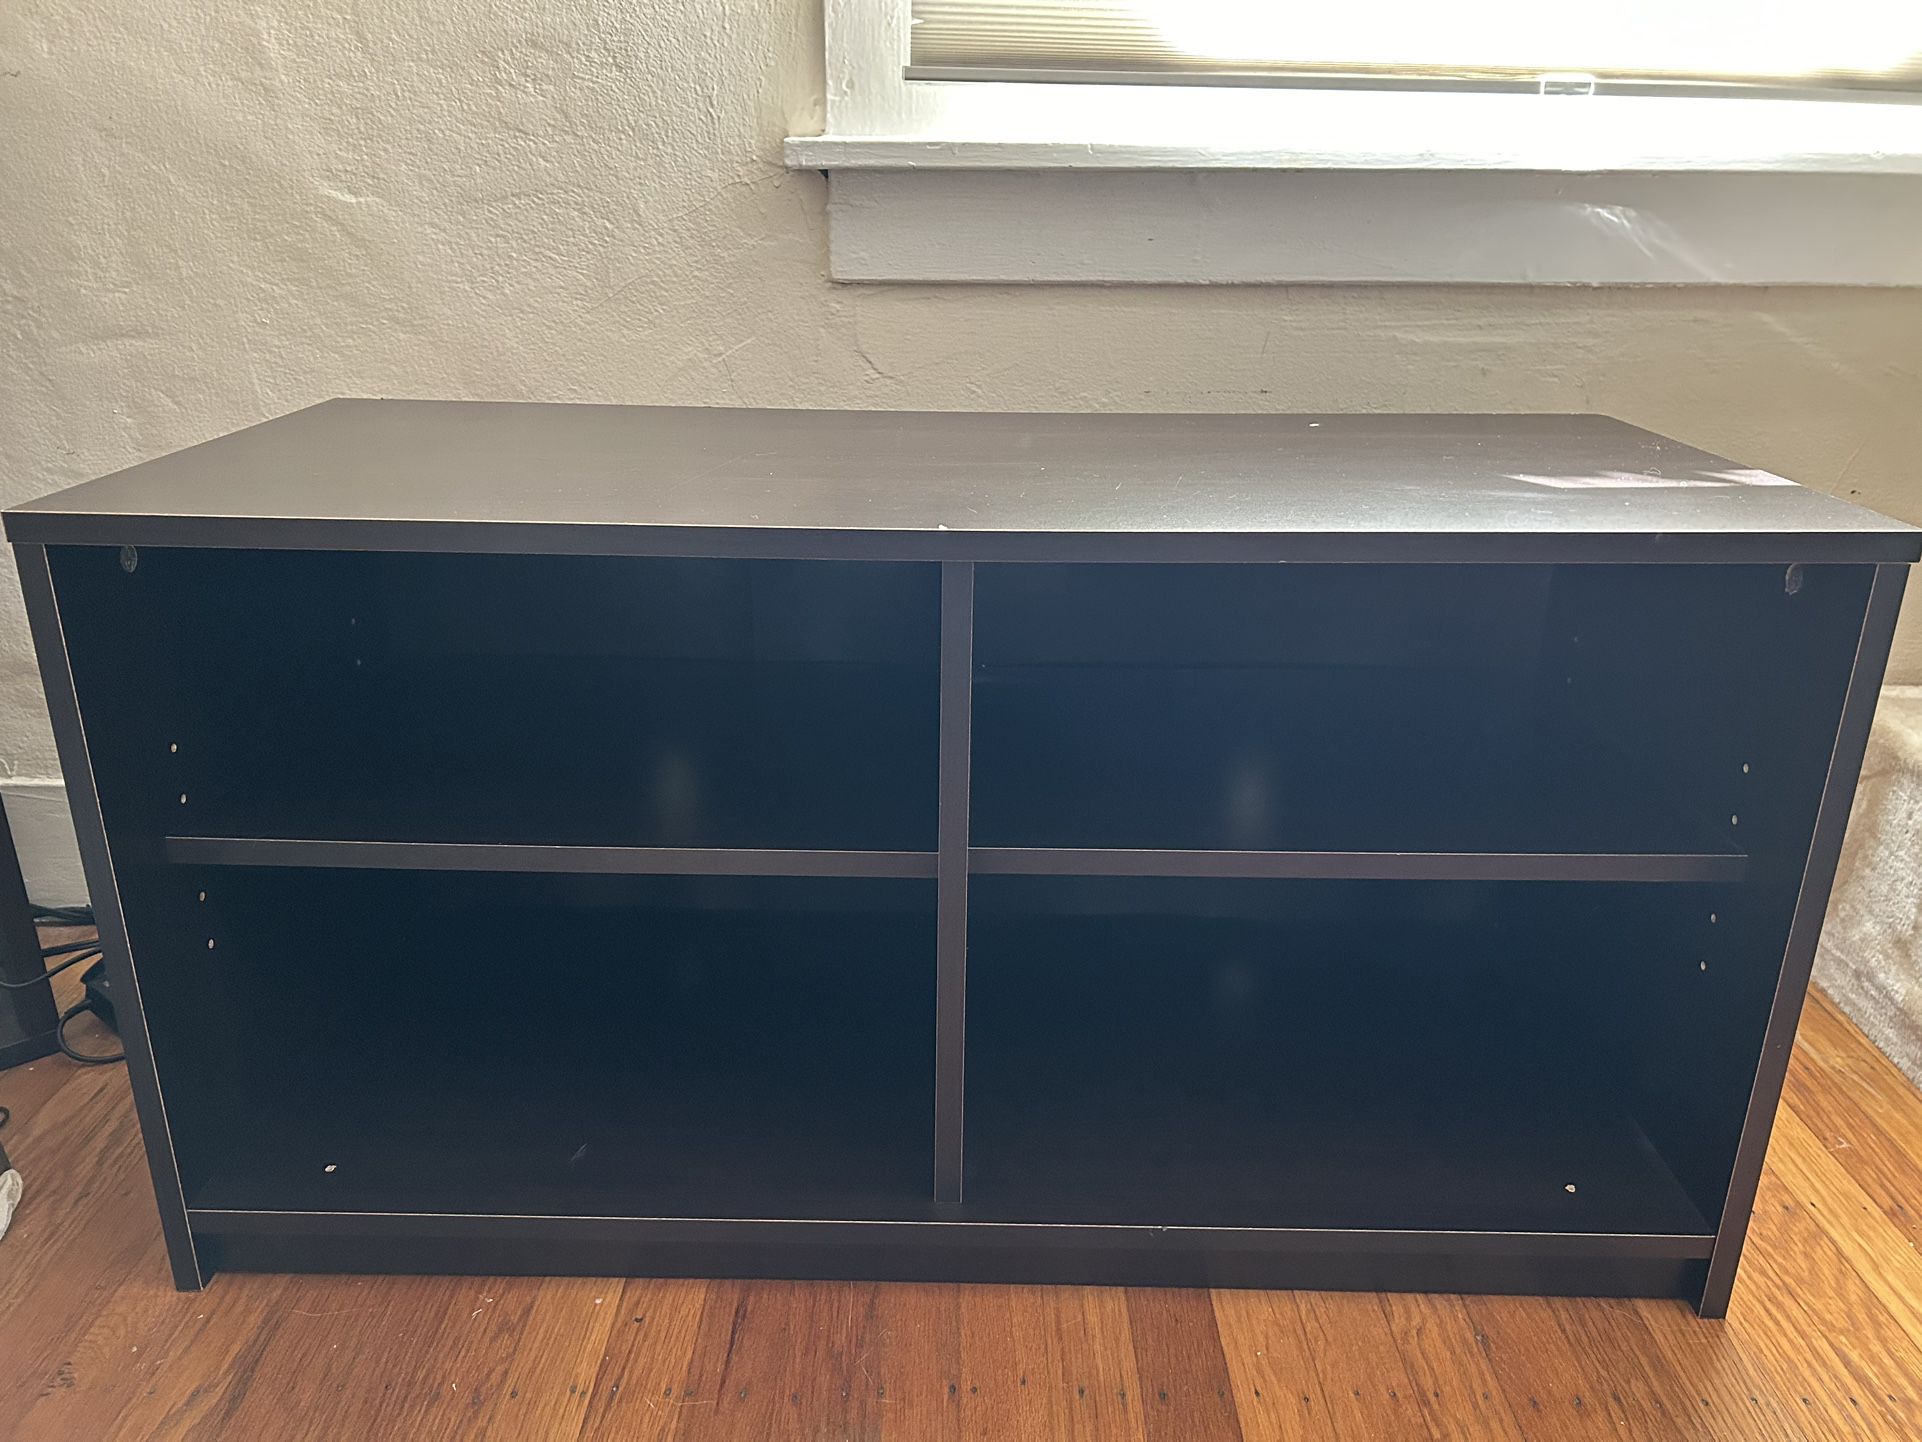 Wooden Shelf / TV Stand